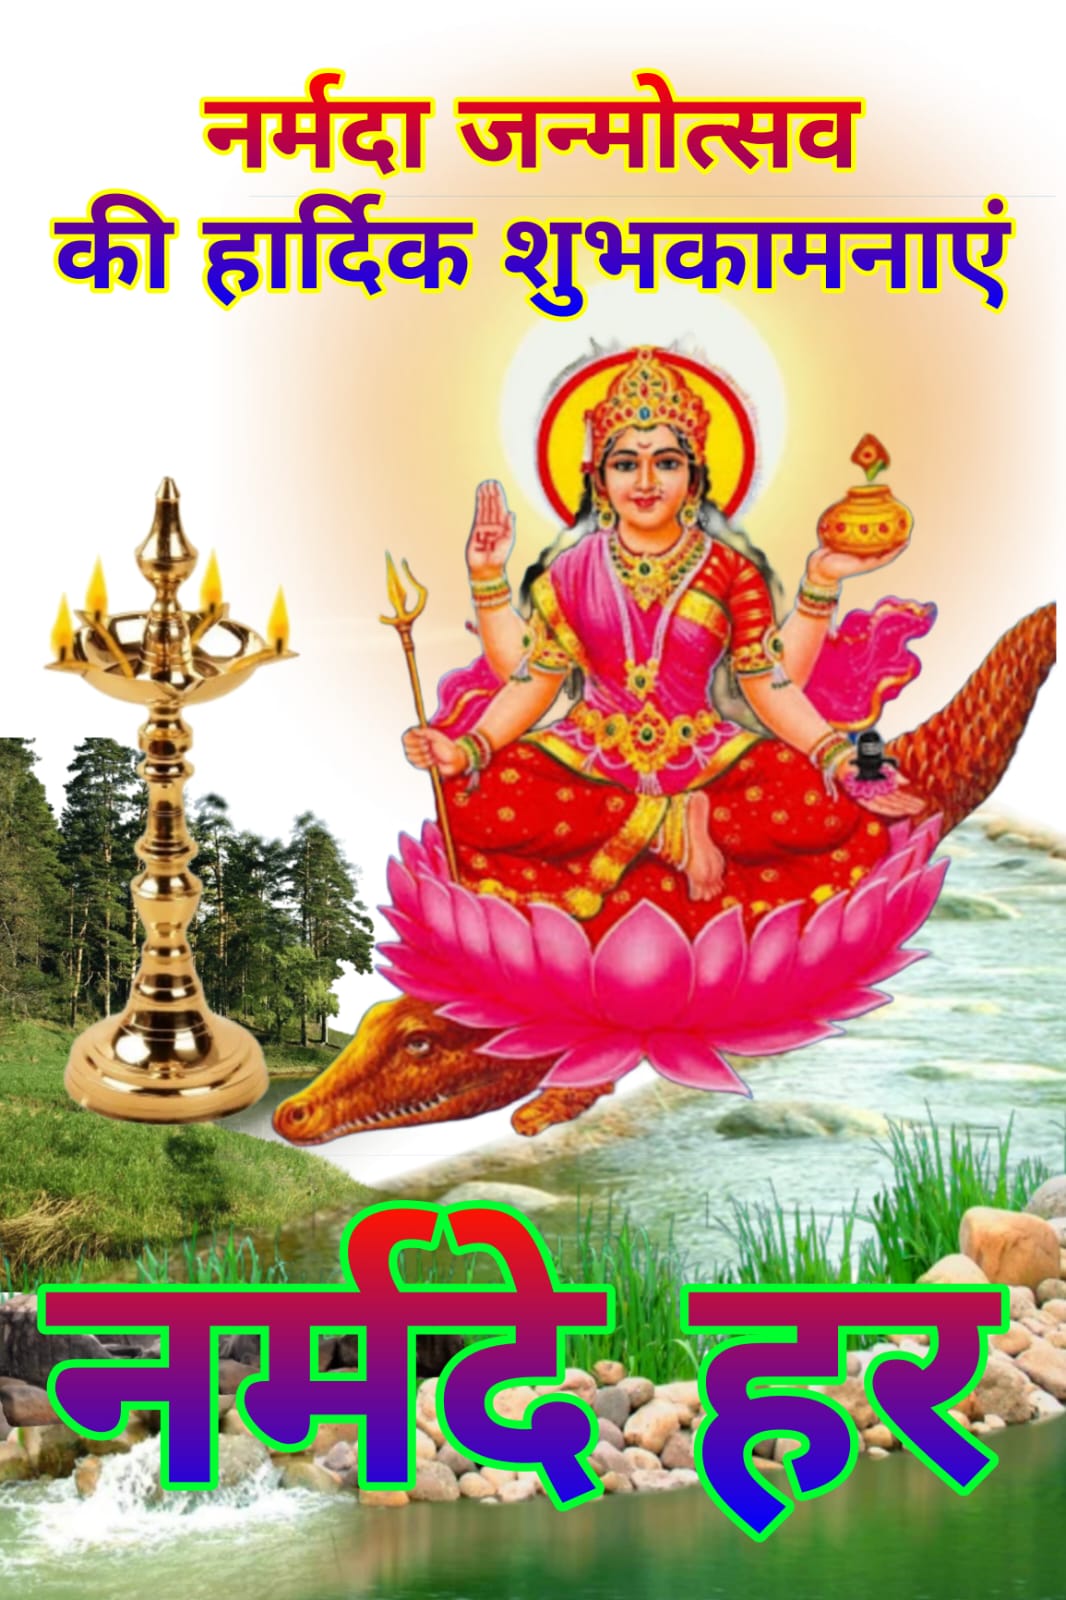 मां नर्मदा प्रकटोत्सव की हार्दिक शुभकामनाएं | नर्मदा जन्मोत्सव की शुभकामनाएं | Happy Narmada Janmotsav Prakatotsav